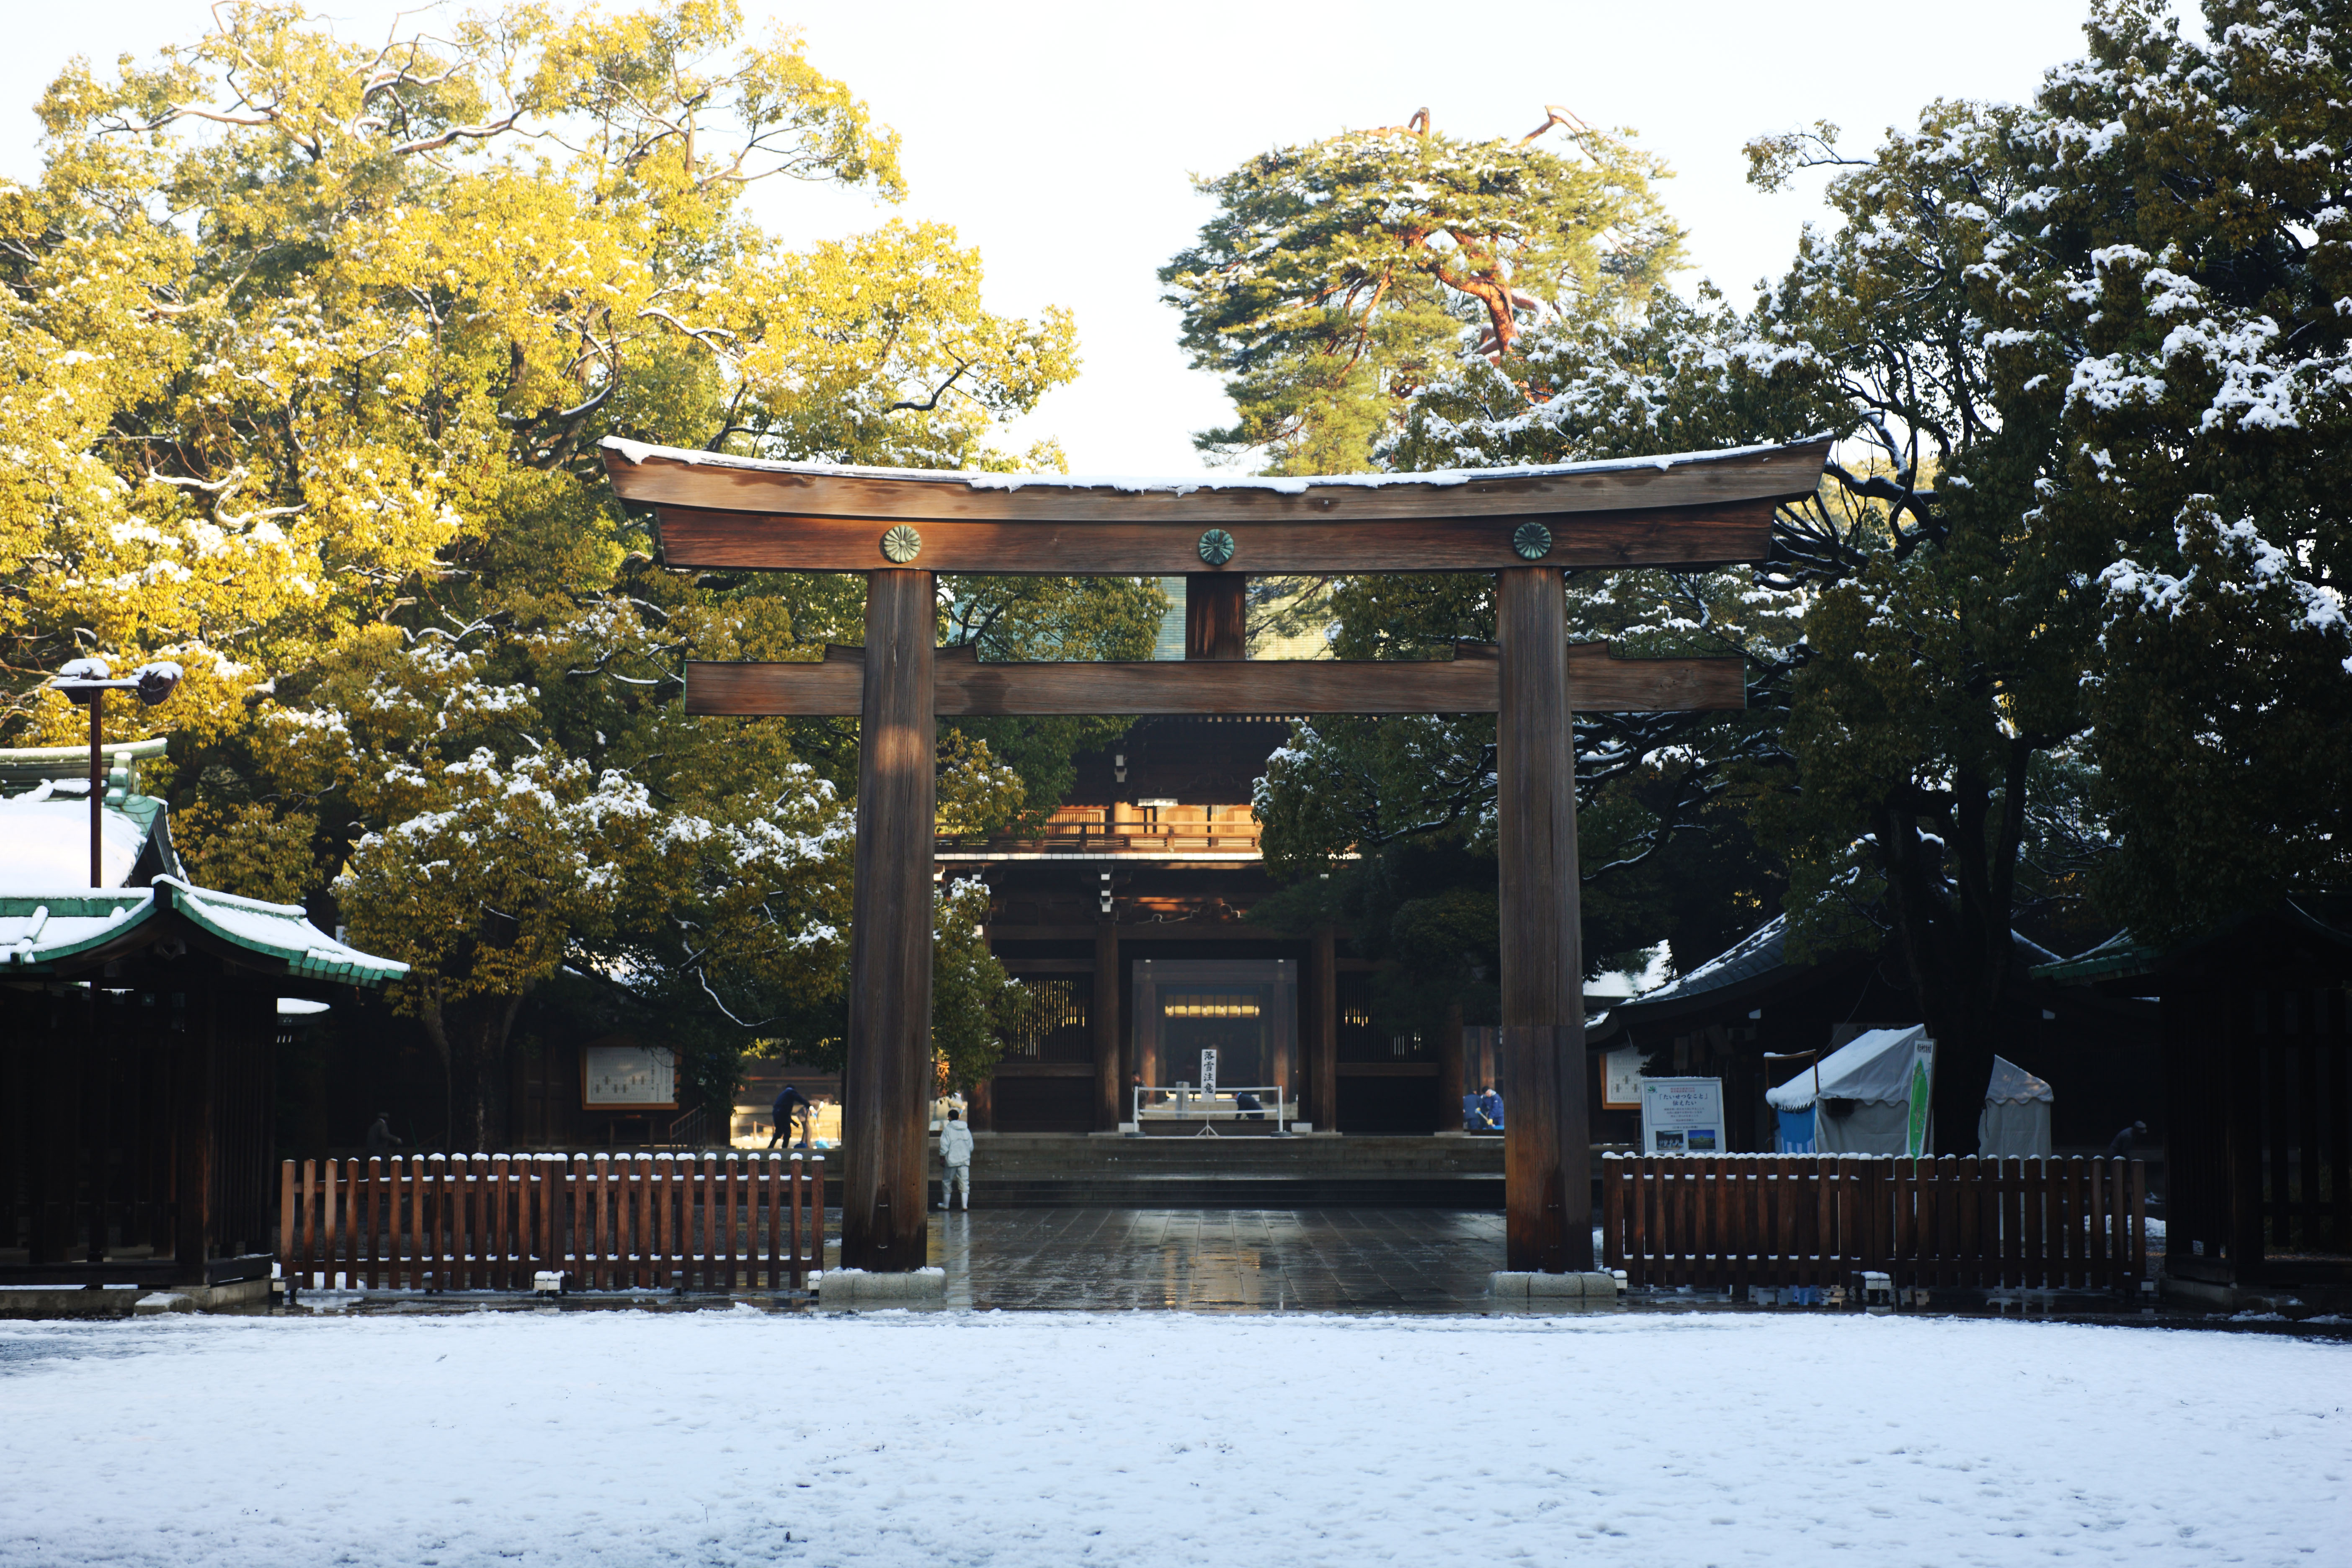 foto,tela,gratis,paisaje,fotografa,idea,Meiji torii del santuario, El Emperador, Santuario sintosta, Torii, Nieve